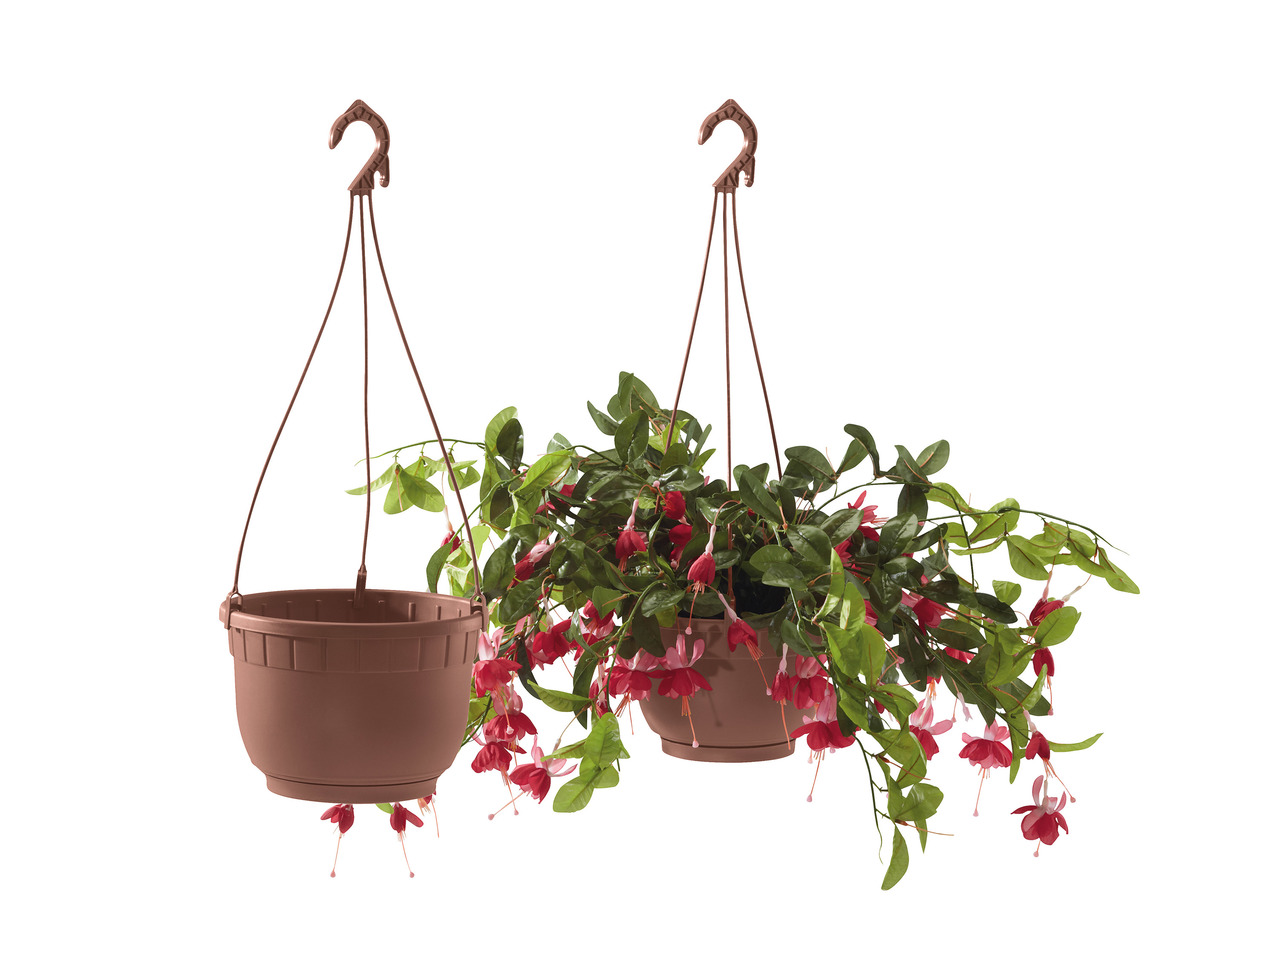 Florabest Hanging Baskets or Plant Pot1